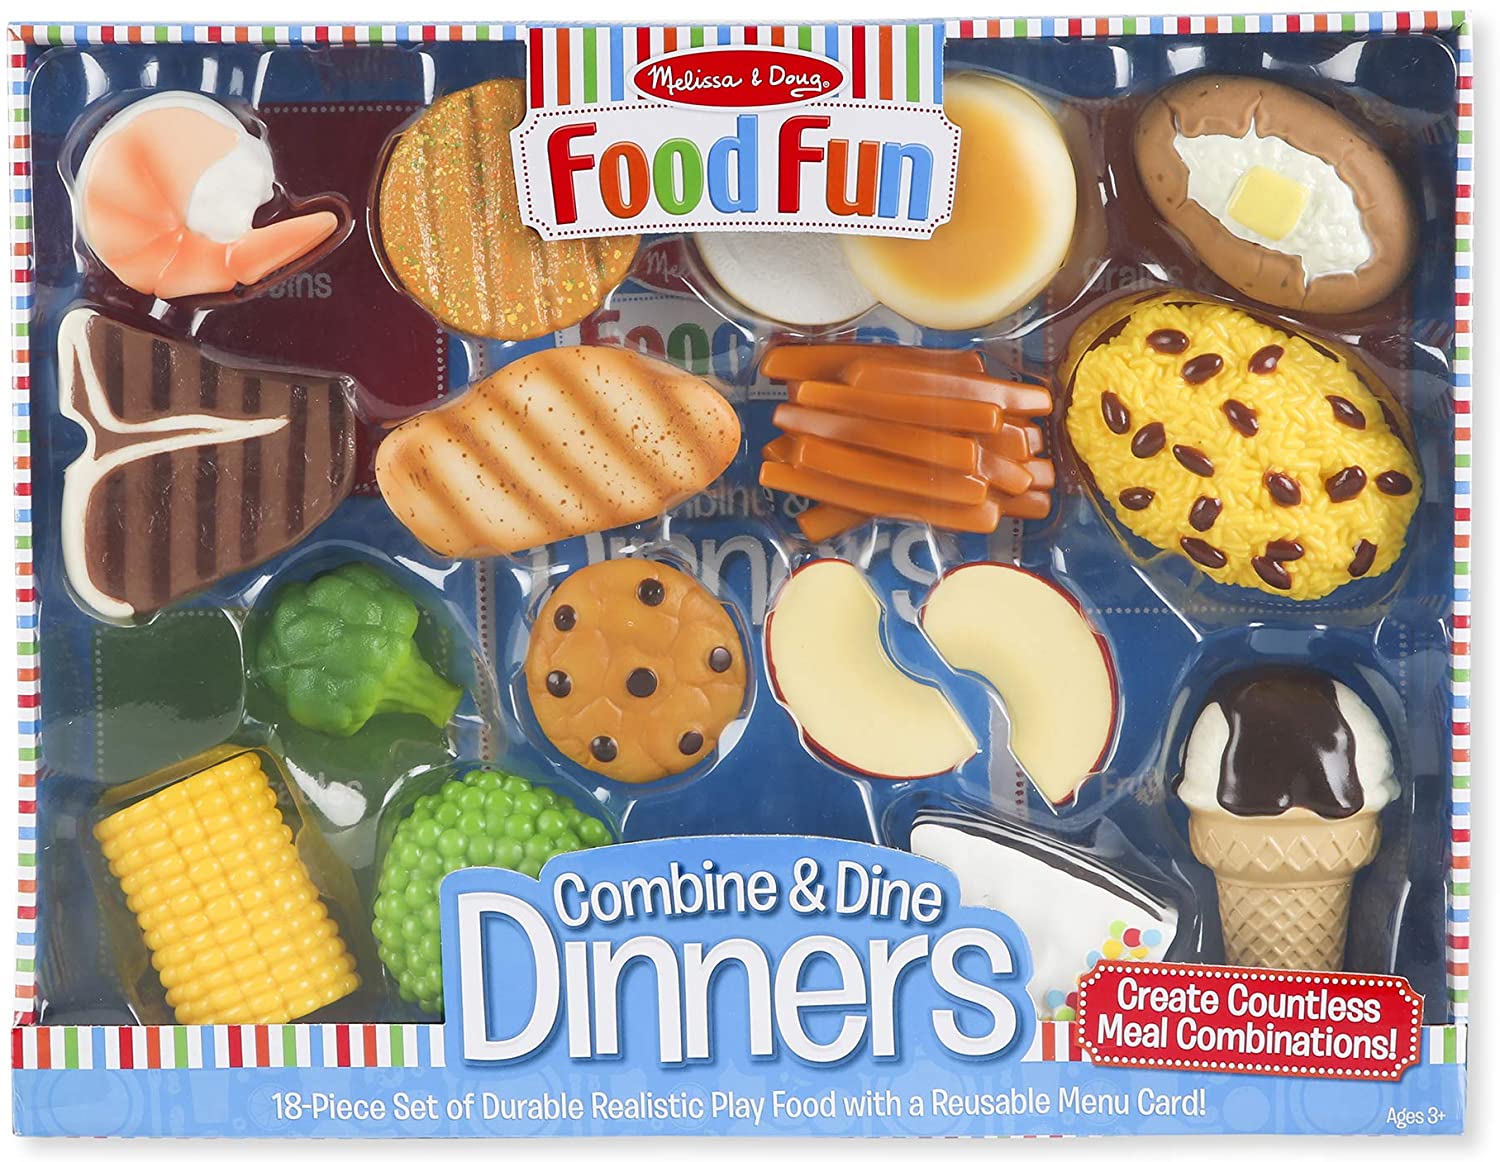 8268 Food Fun Combine & Dine Dinners - Blue